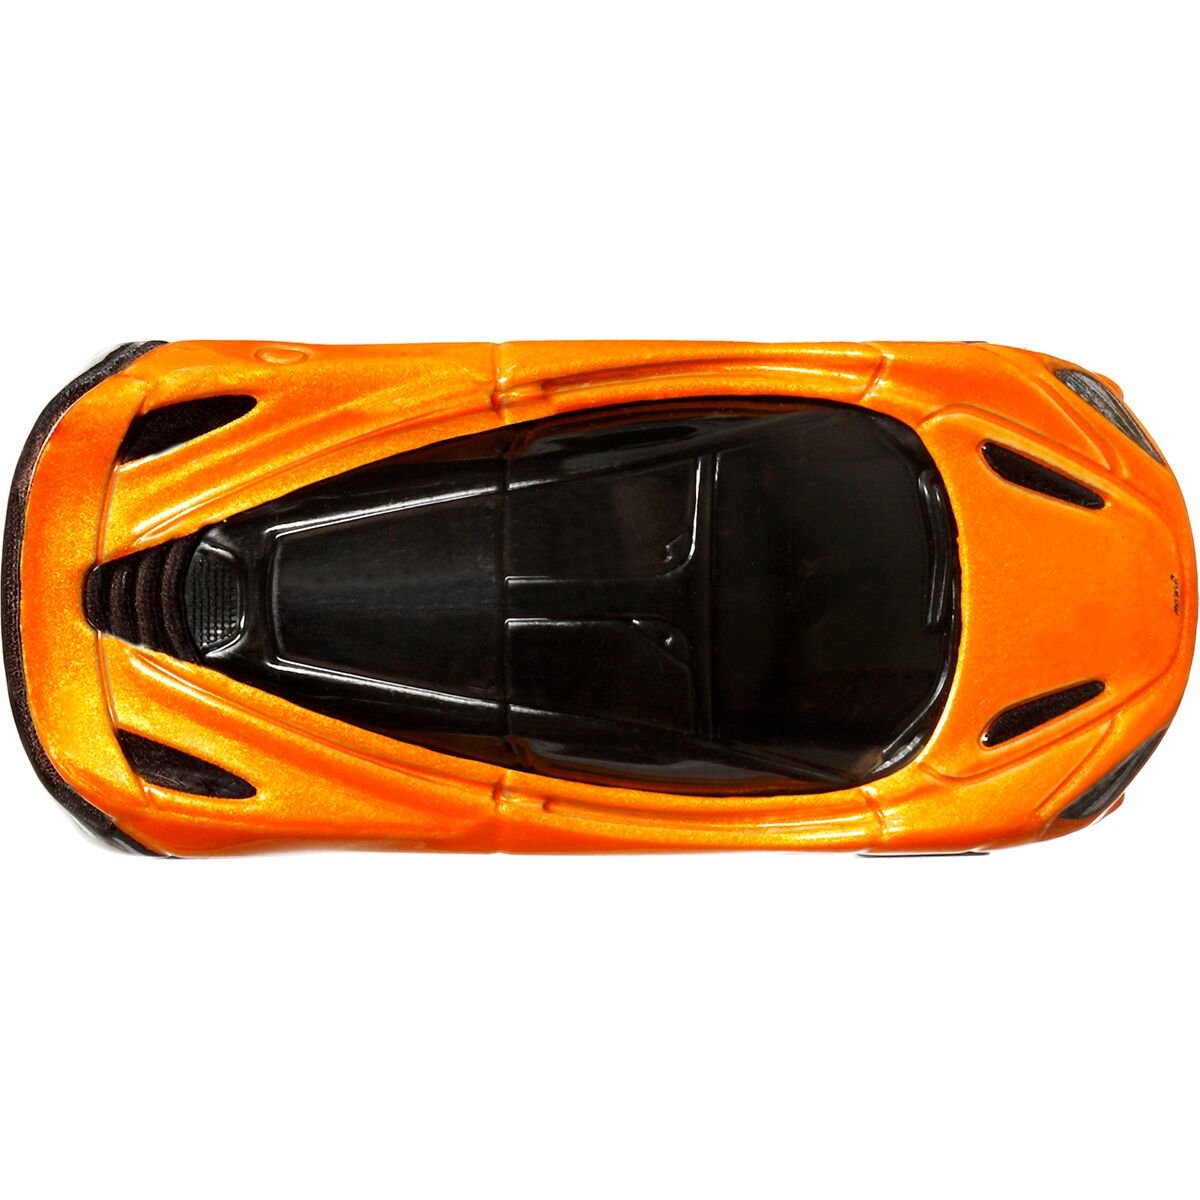 Автомодель Hot Wheels Car Culture McLaren 720S оранжевая с черным (FPY86/HKC43) - фото 6